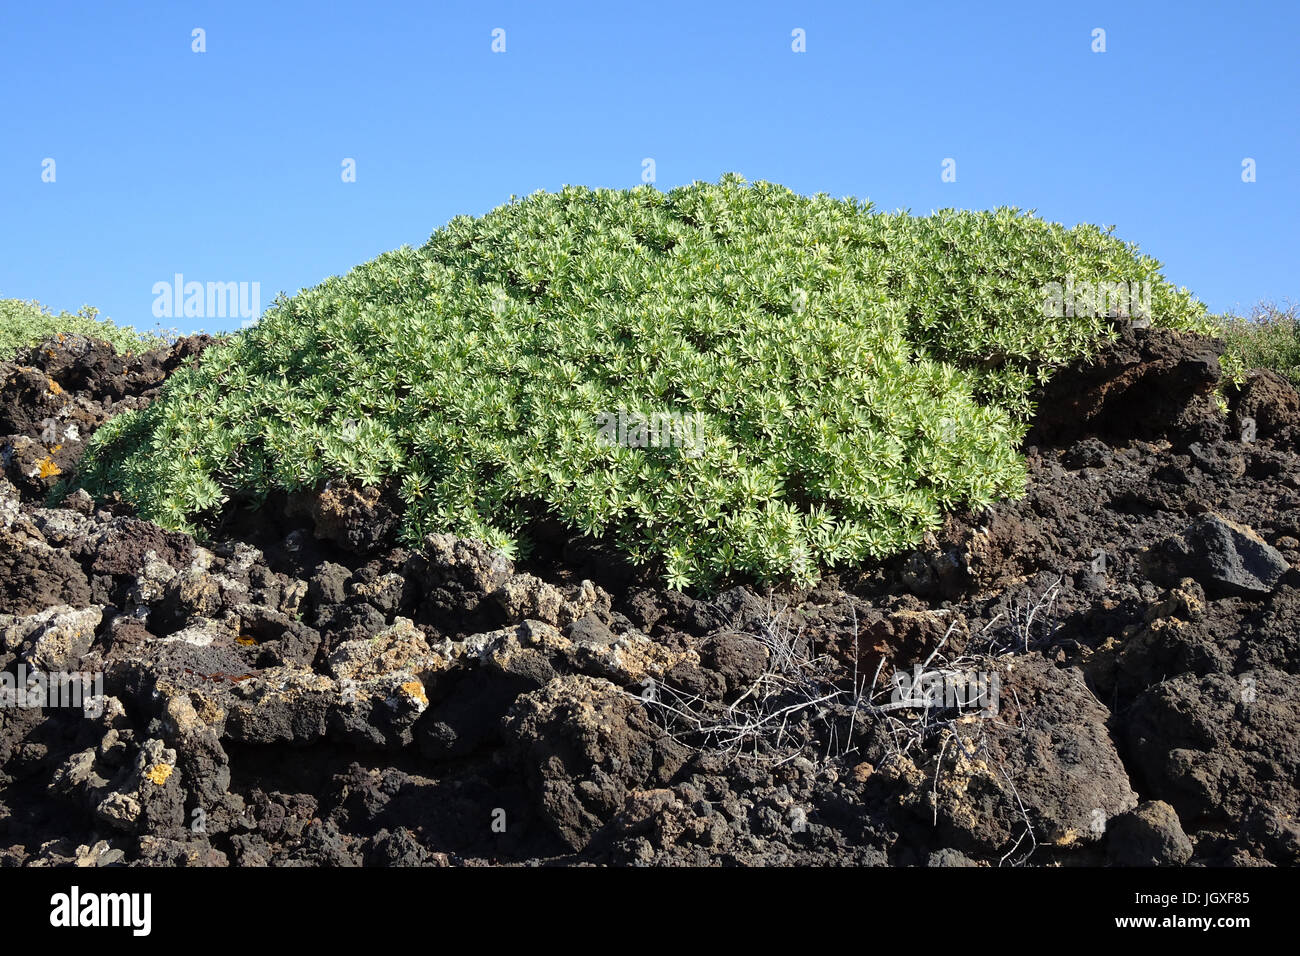 Tabaibastraeucher wachsen auf einem lavafeld, tabaiba dulce, bálsamo-wolfsmilch (Euphorbia balsamifera), kuestenvegetation bei el golfo, Lanzarote, kan Foto de stock